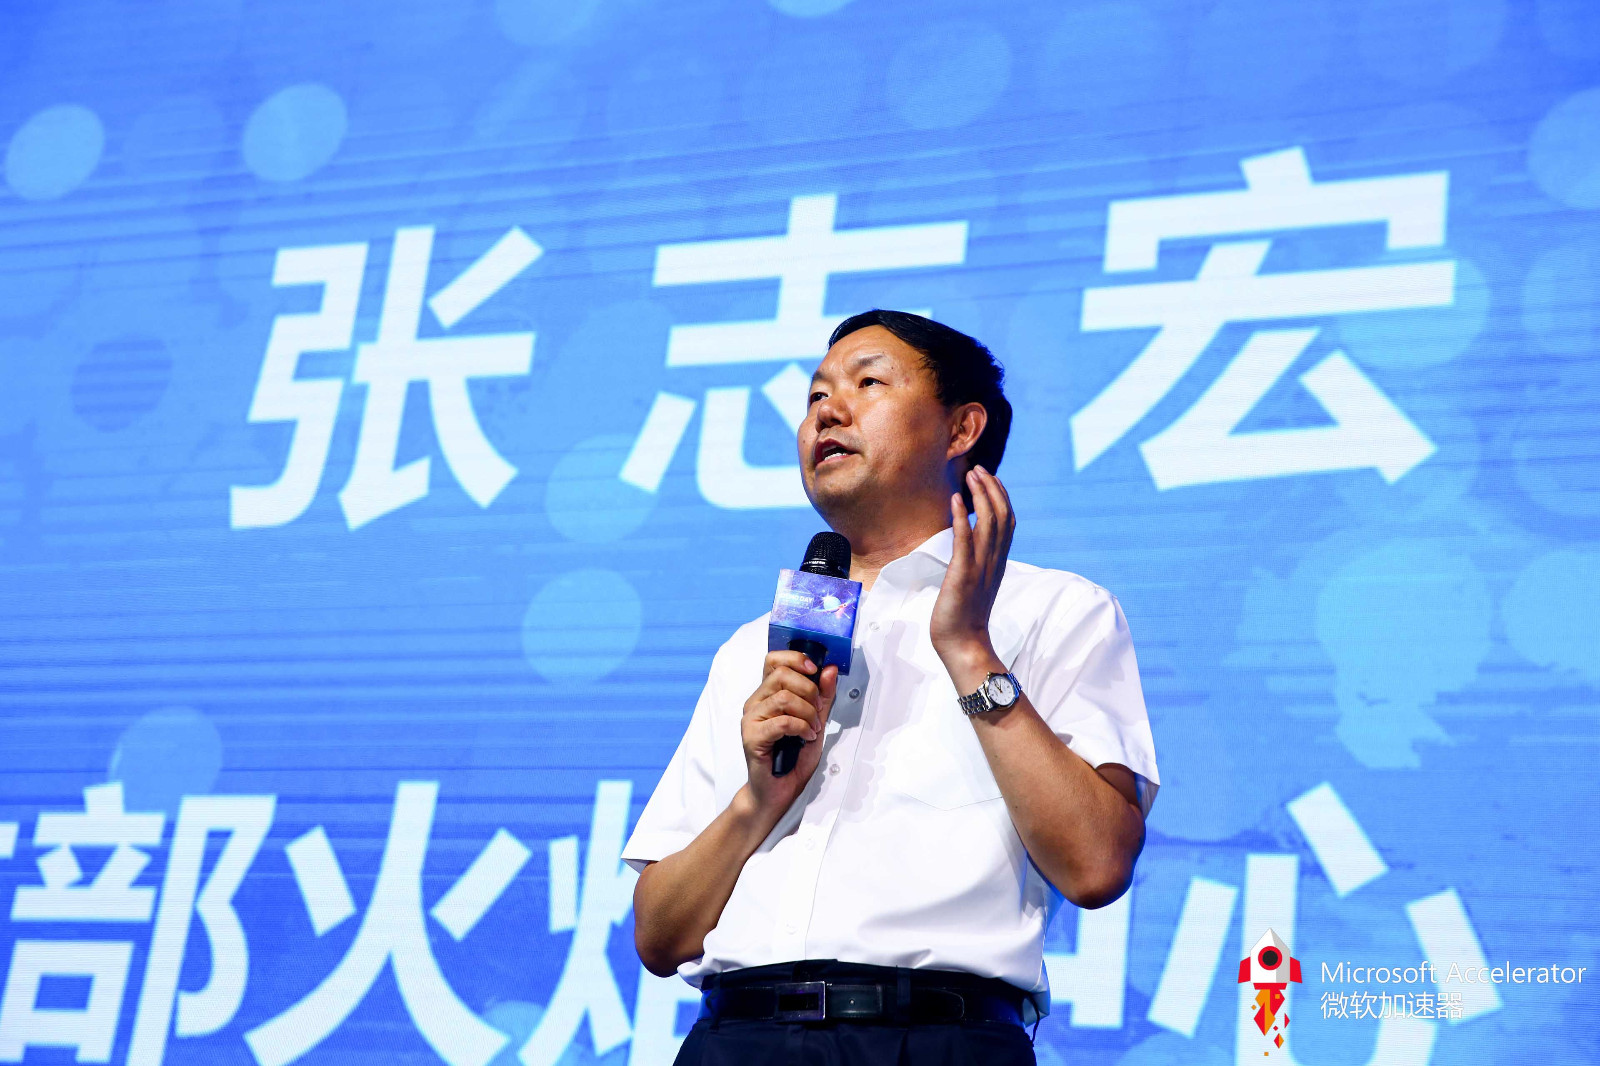 微软加速器·北京第九期展示日 构建企业融通